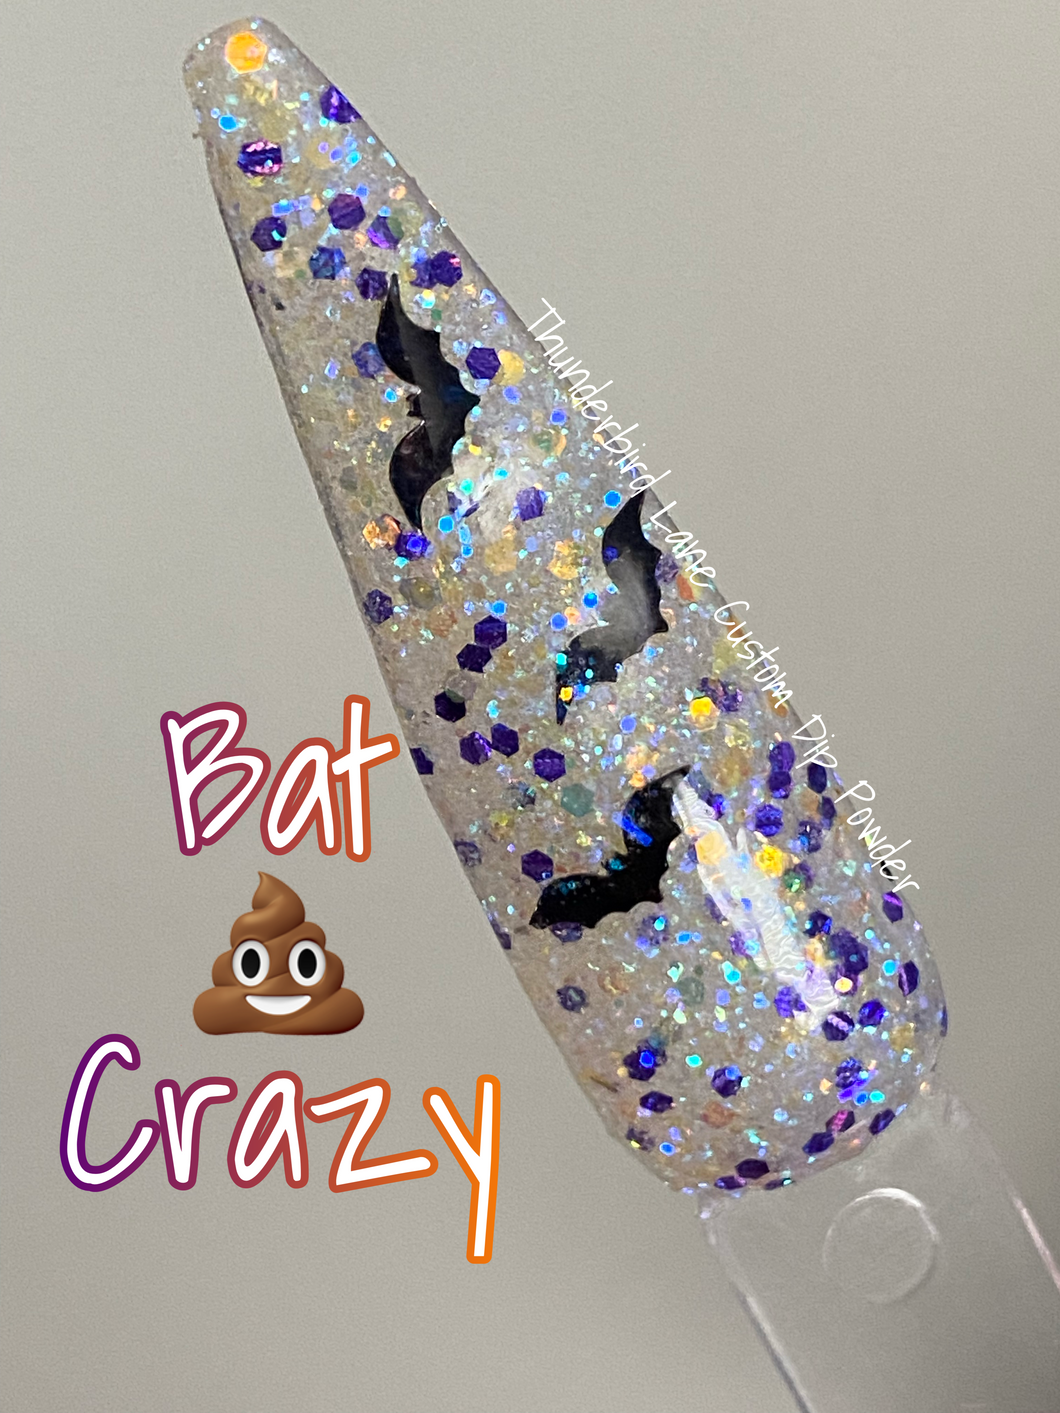 Bat Sh*t 💩 Crazy